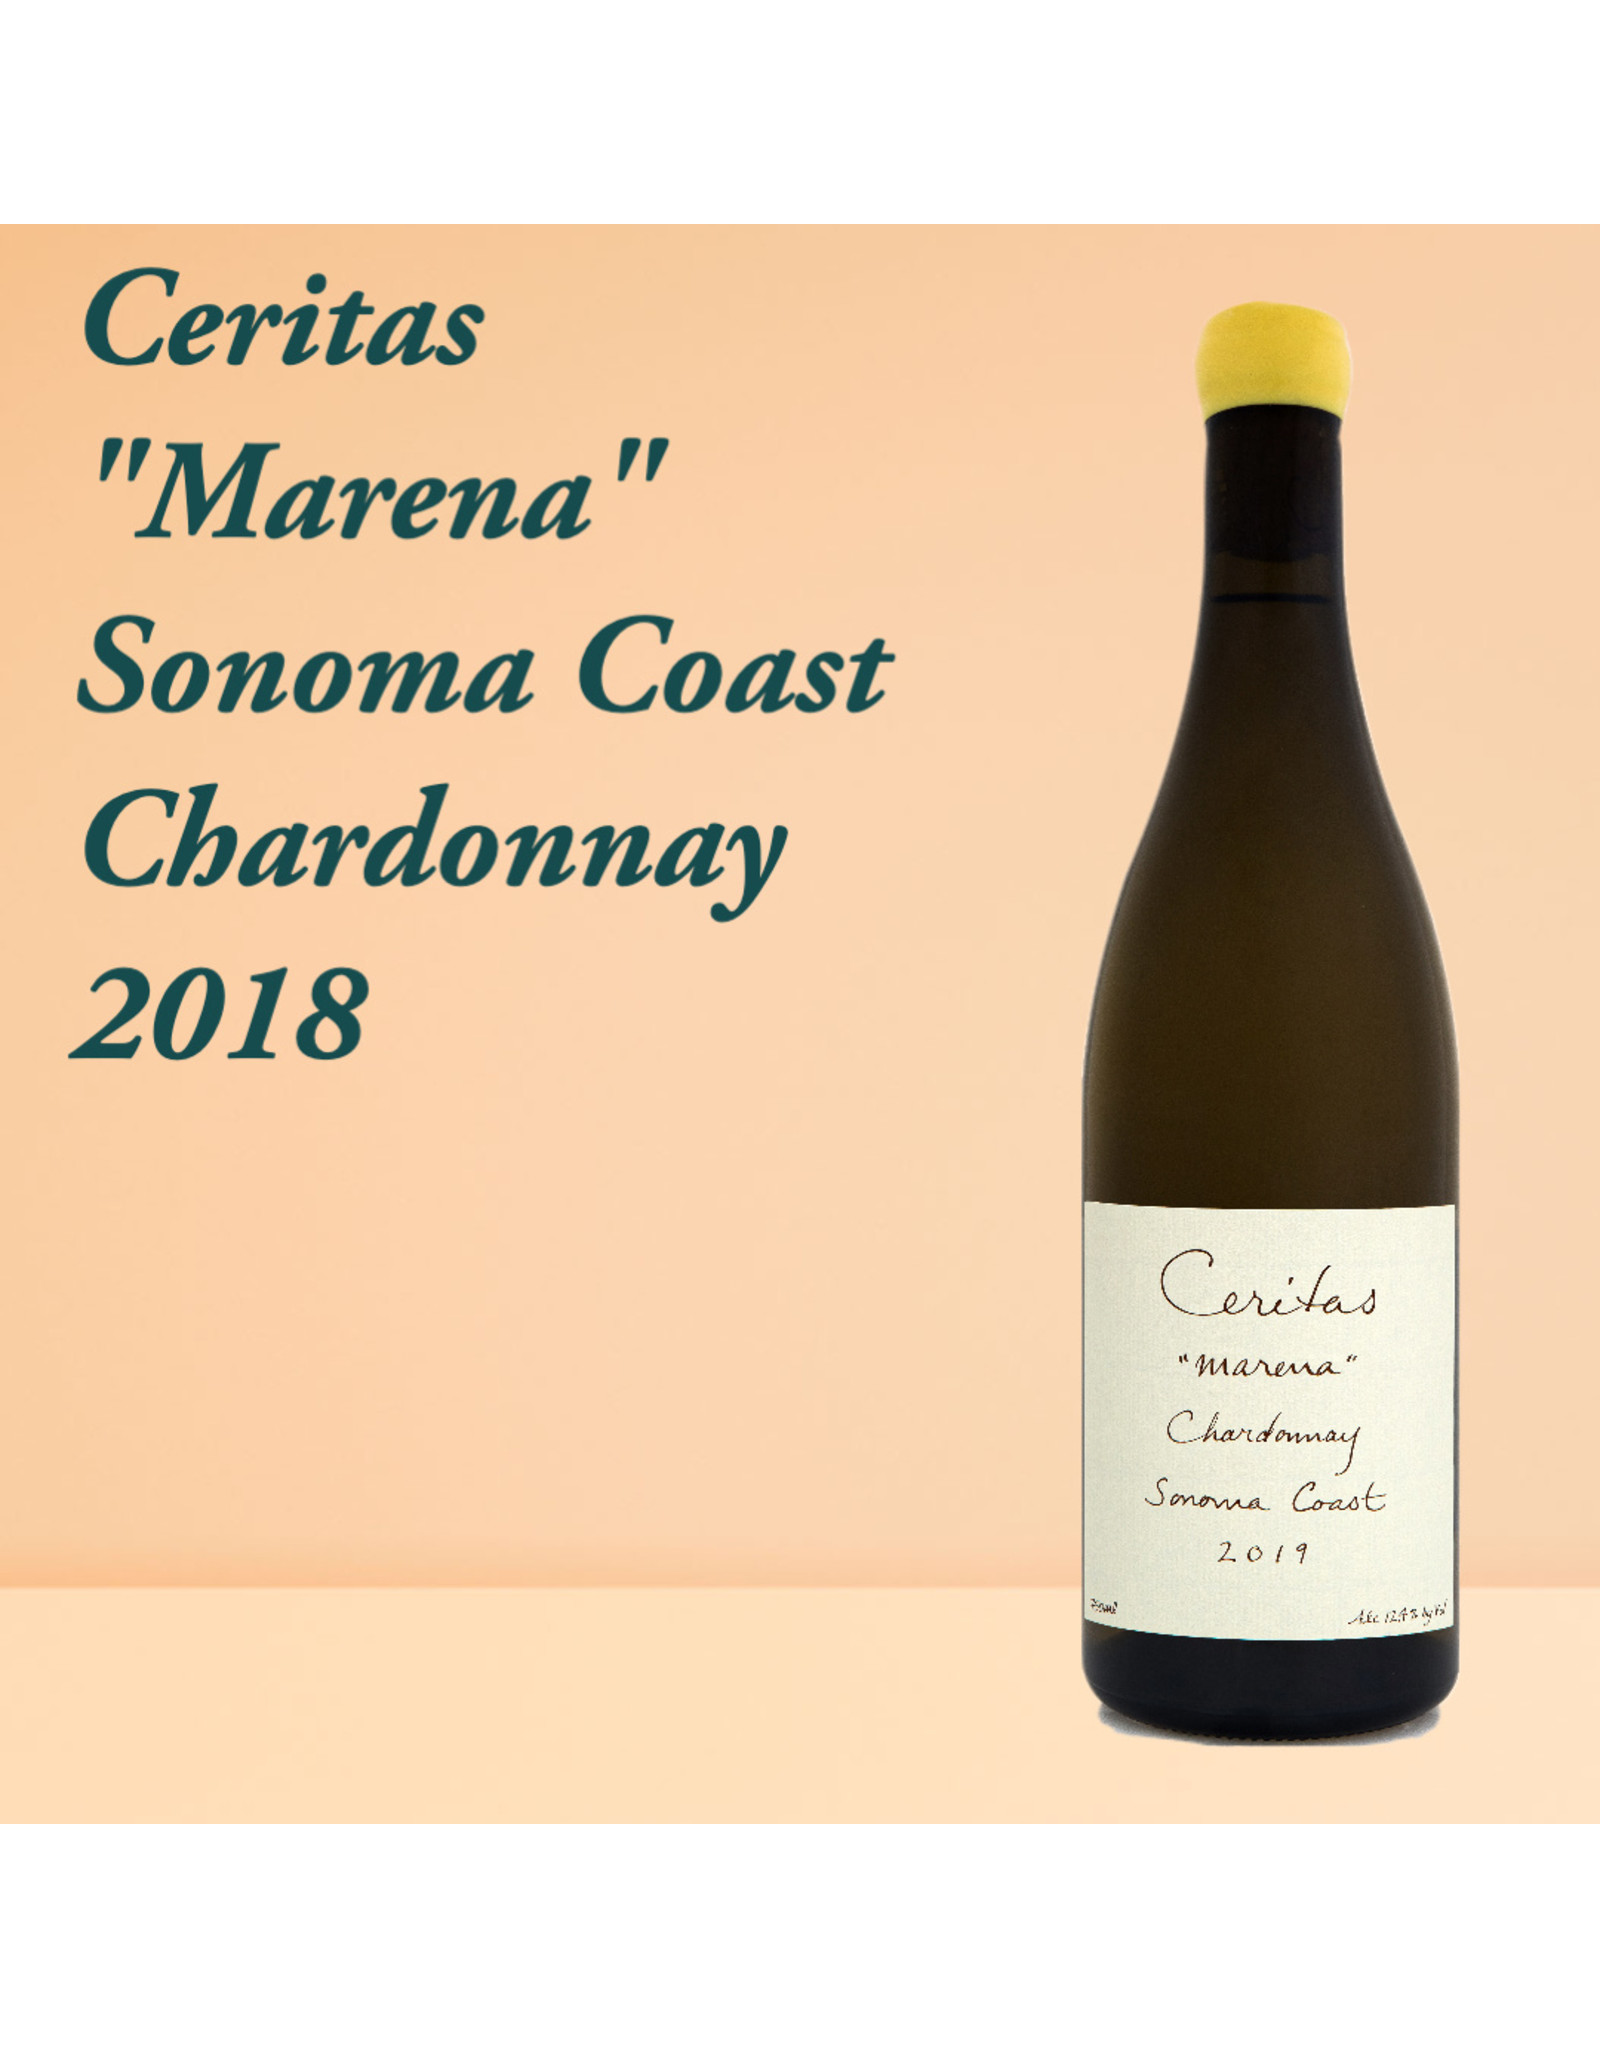 Ceritas "Marena" Sonoma Coast Chardonnay, 2018